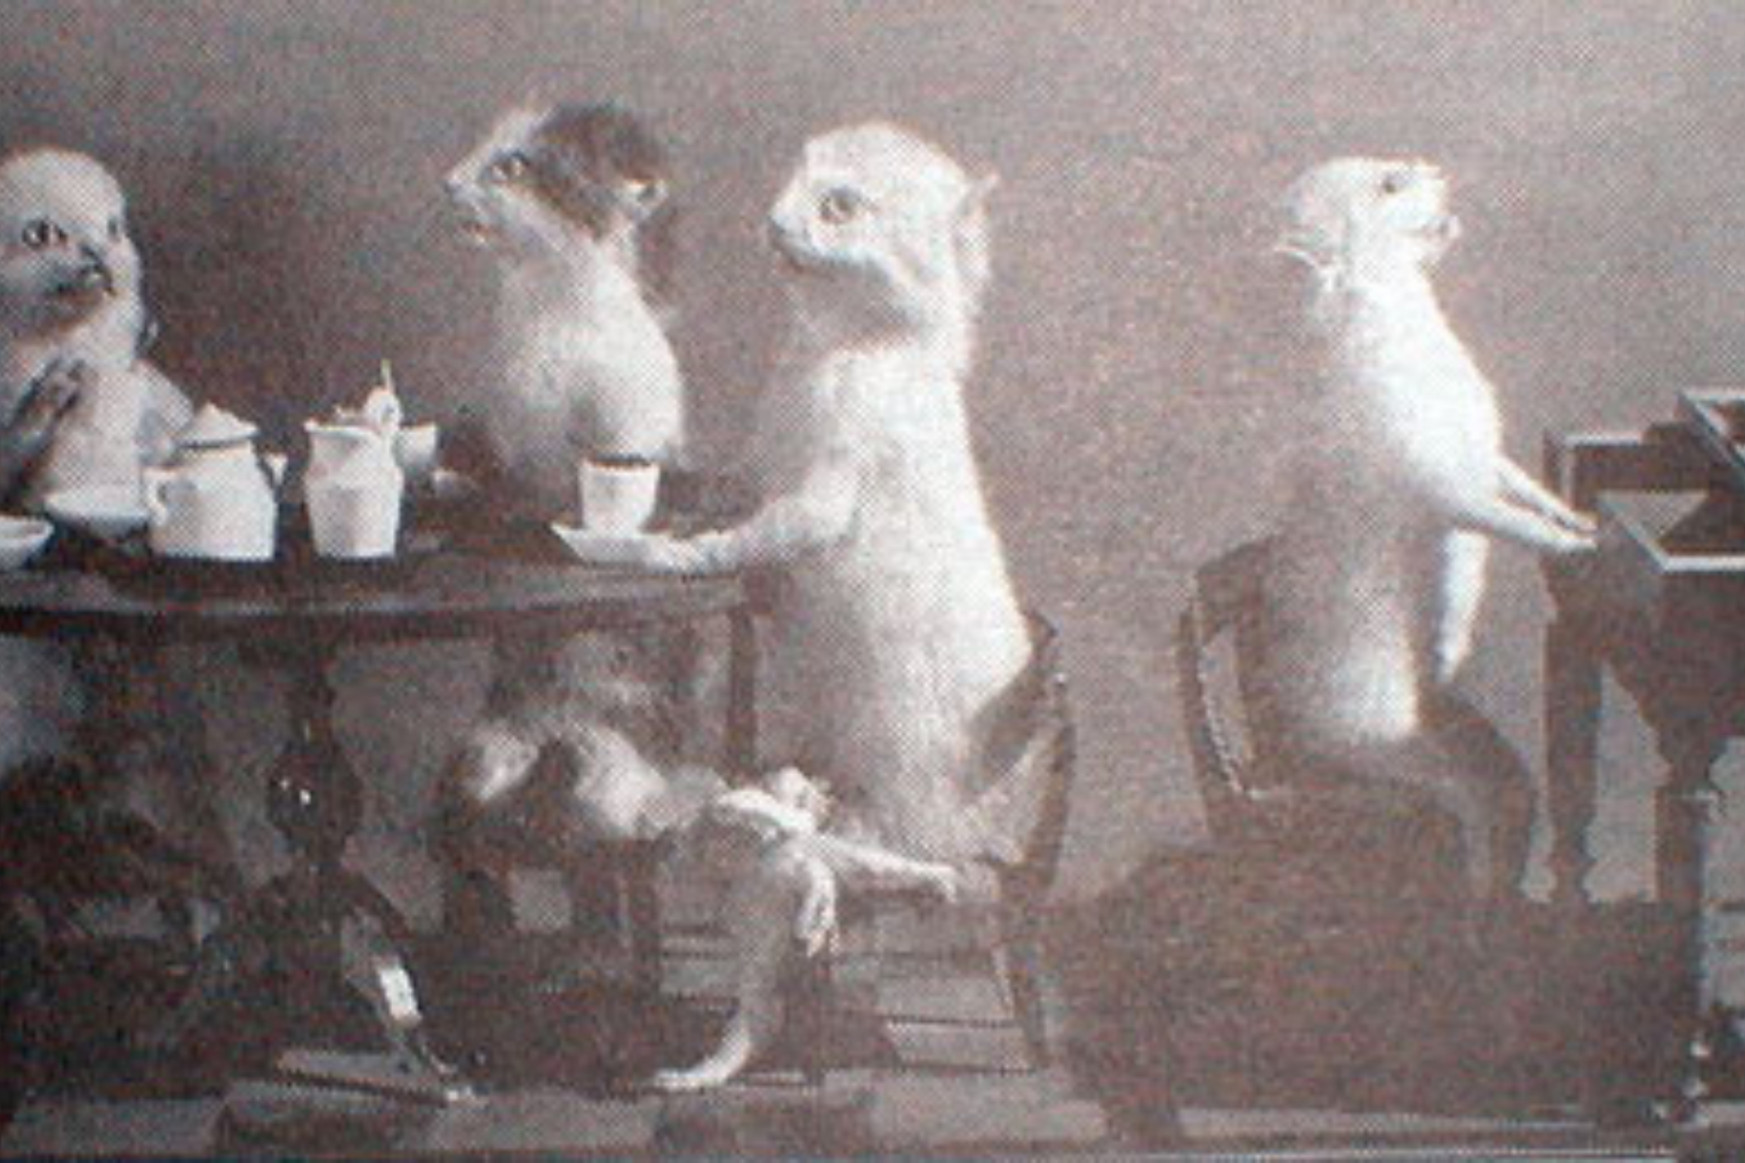 Teadélutánozó macskák és bokszoló mókusok jelentik a viktoriánus kor művészetének legbizarrabb örökségét